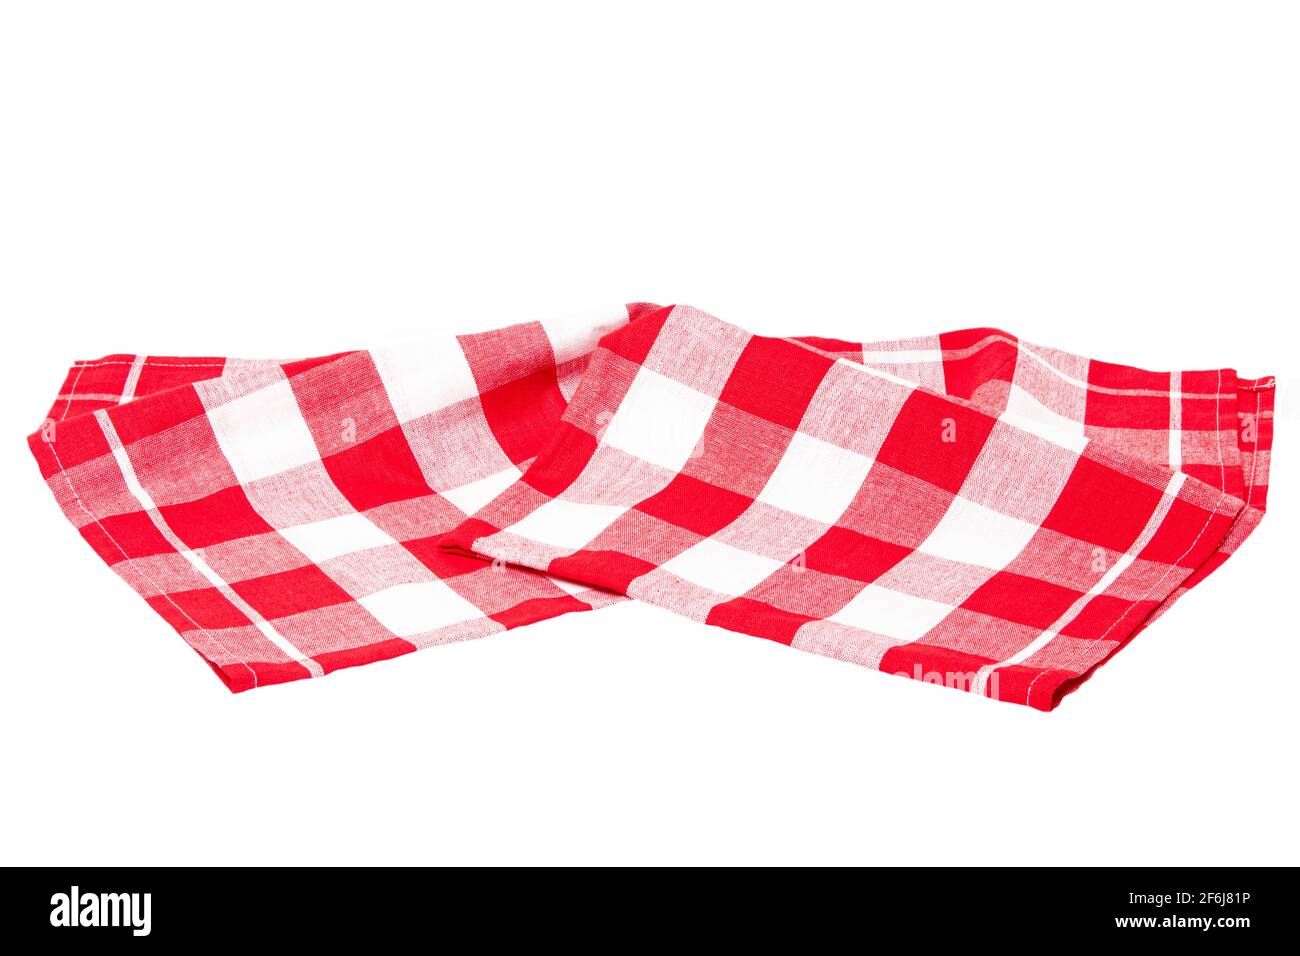 Nahaufnahme einer rot weiss kariert Serviette oder Tischdecke Textur auf weißem Hintergrund. Zubehör für die Küche. Stockfoto